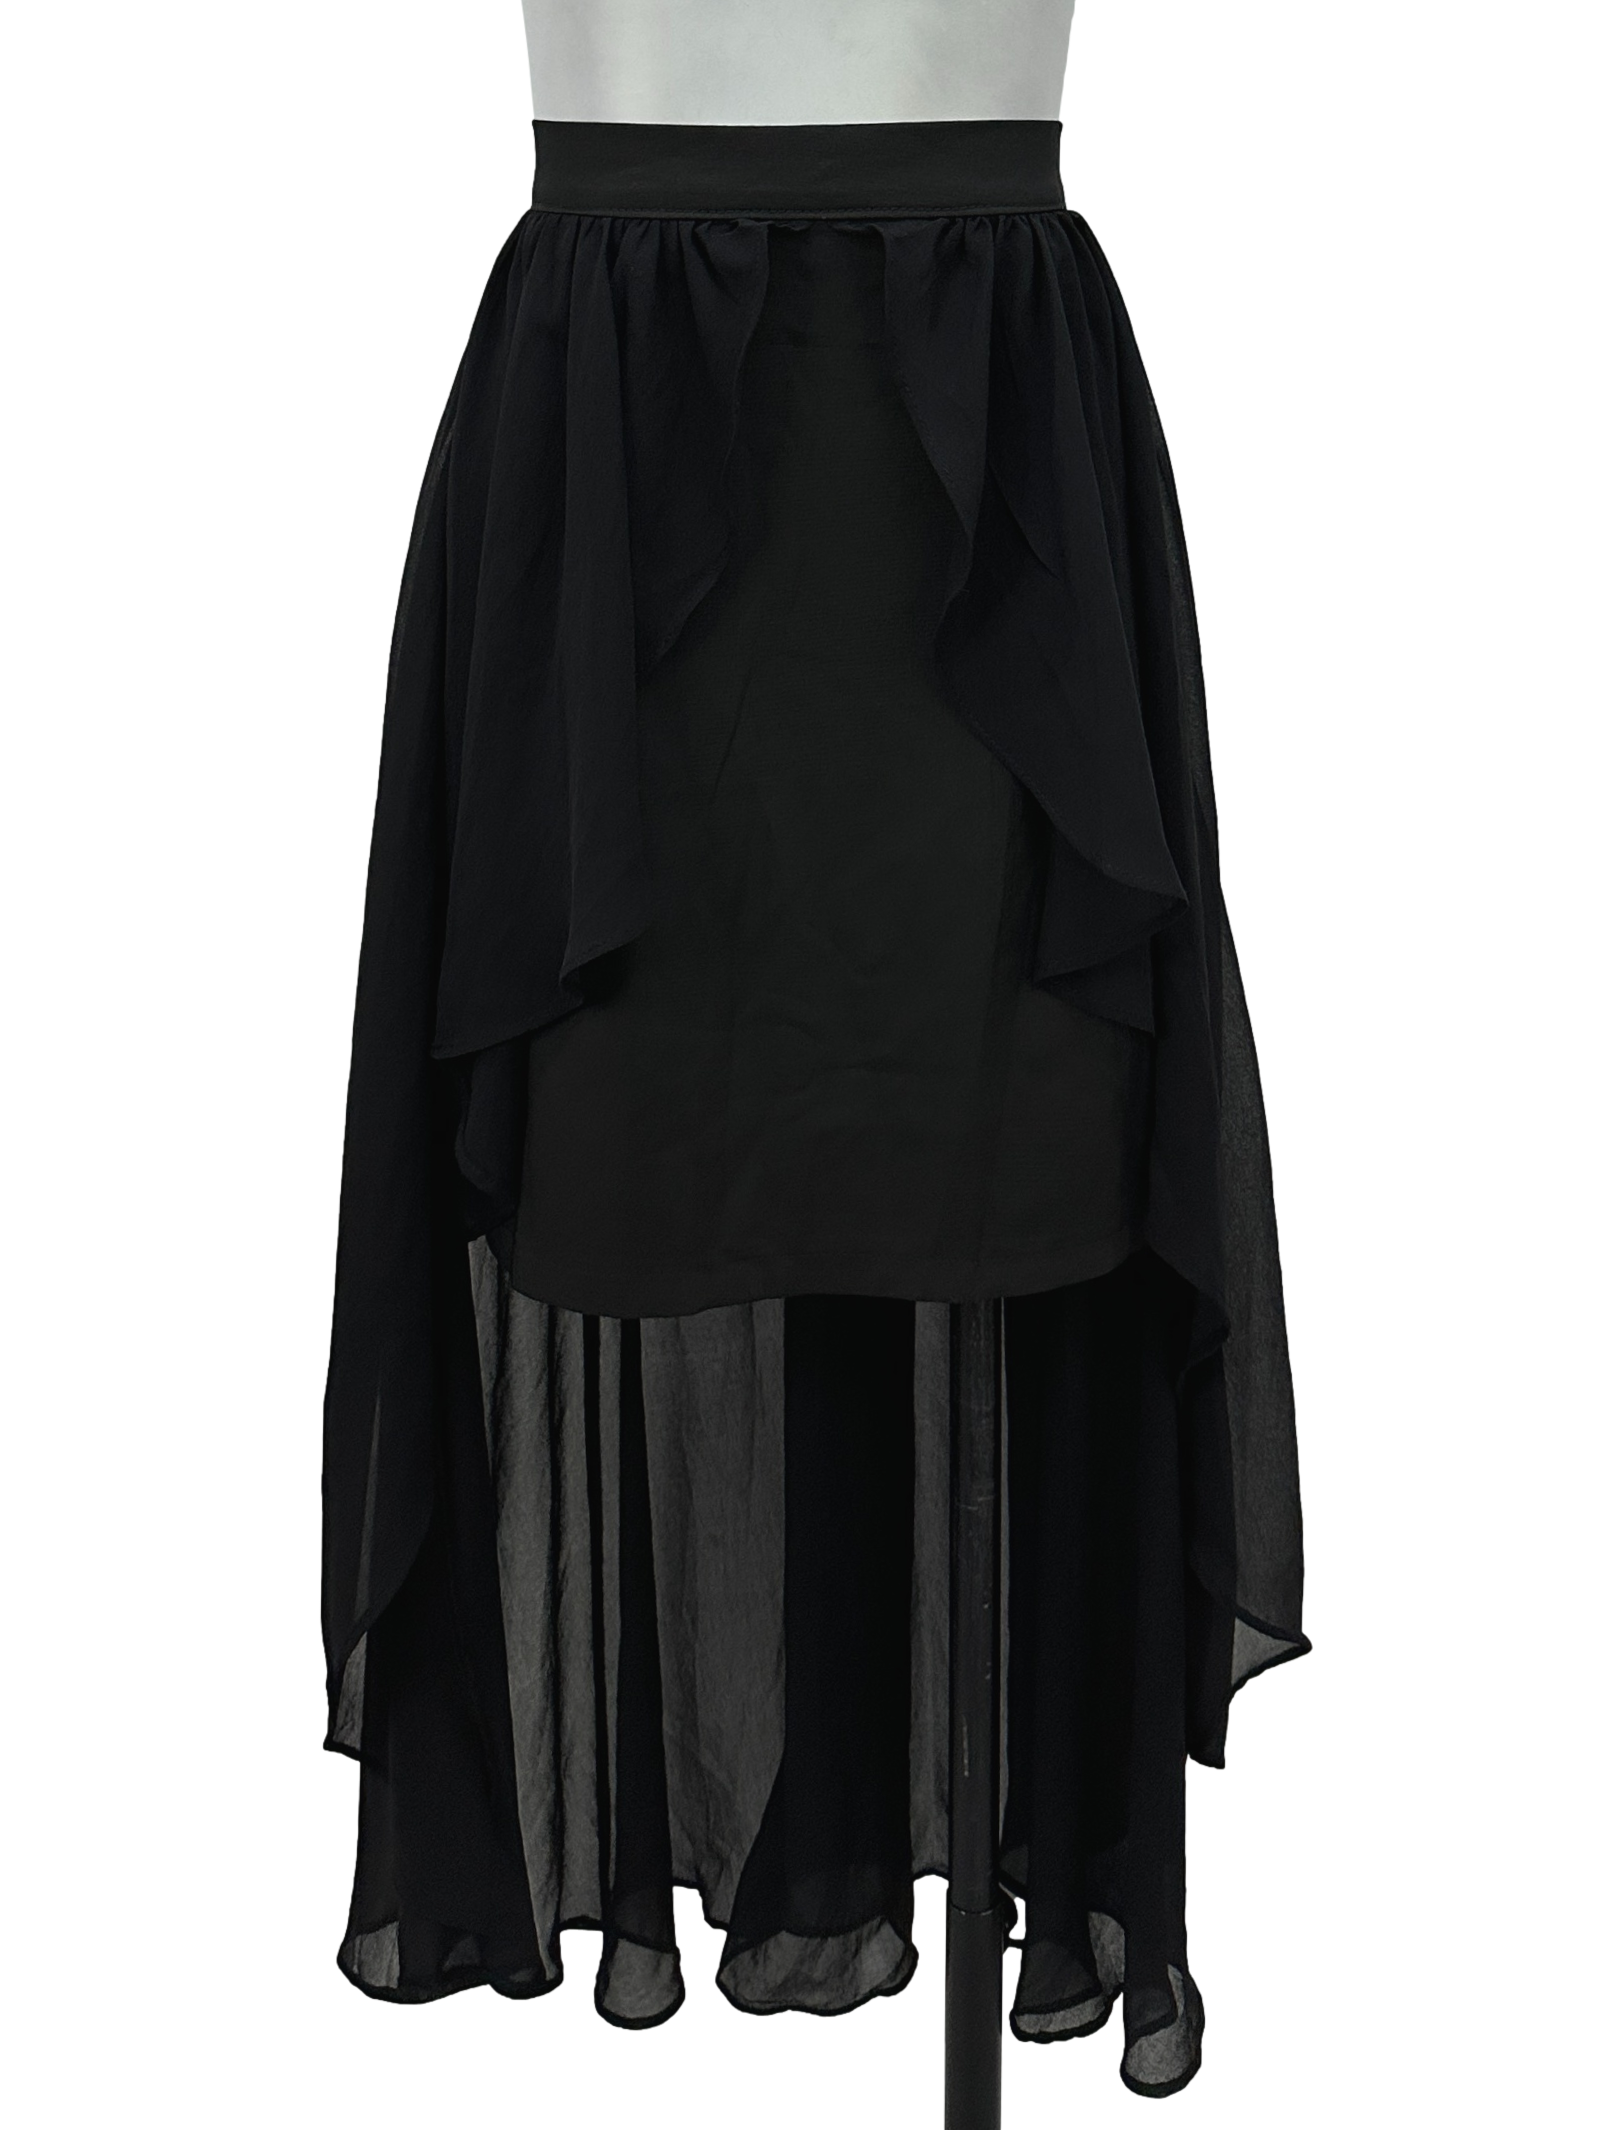 Black Ruffle Layered Skirt